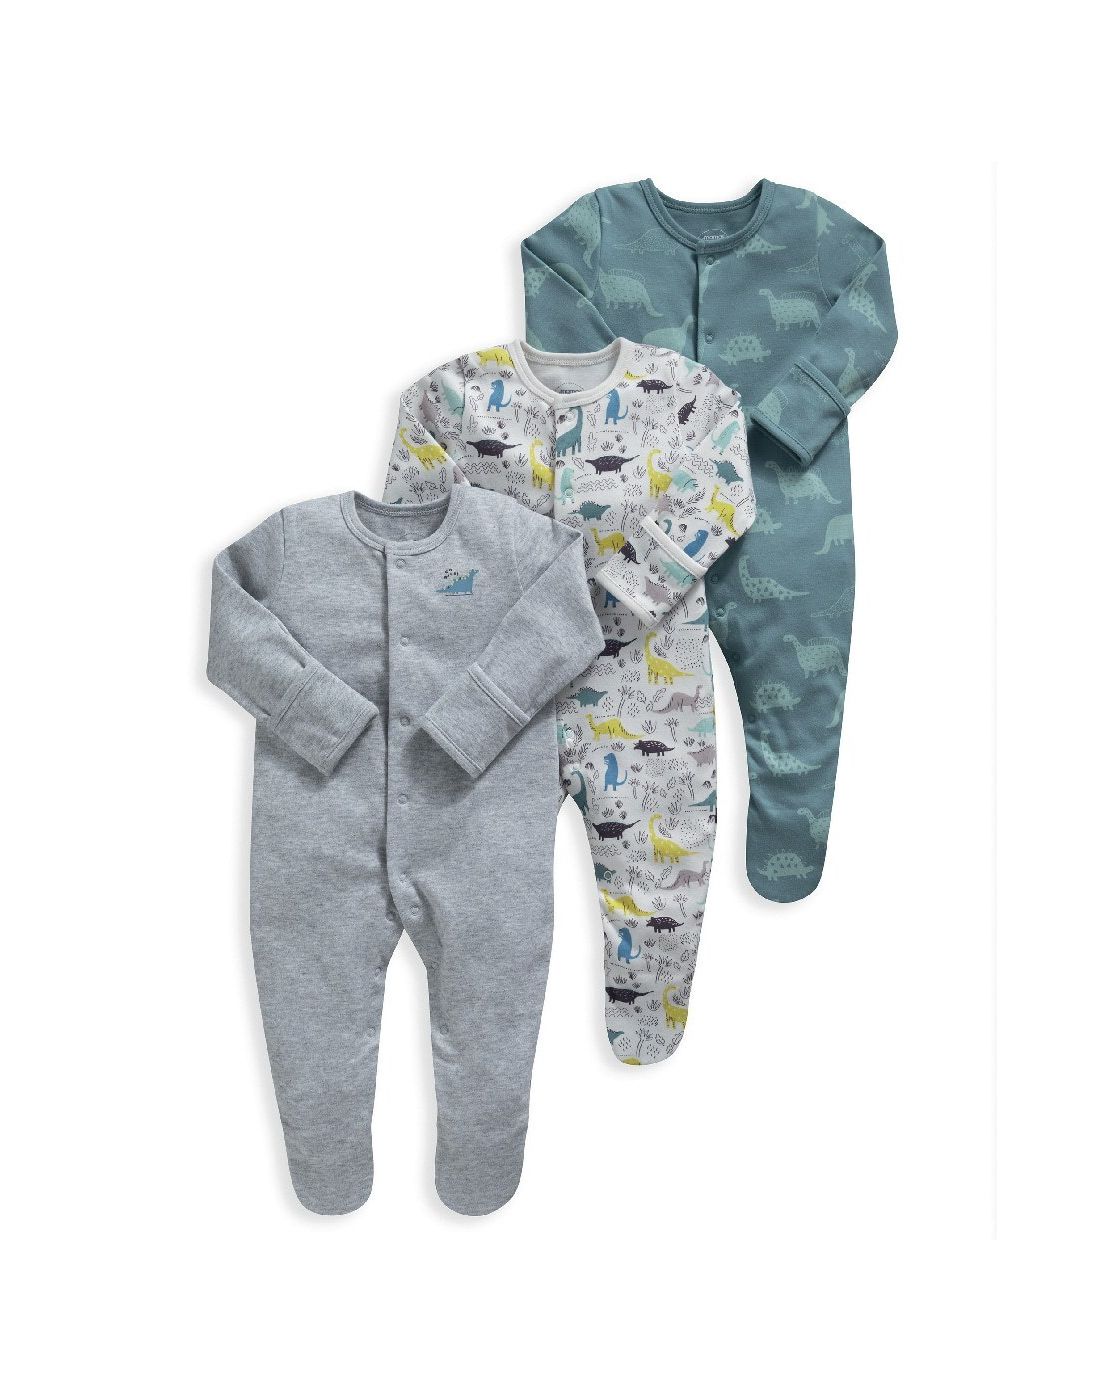 Mamas & Papas Sleepsuits - 3 Pack